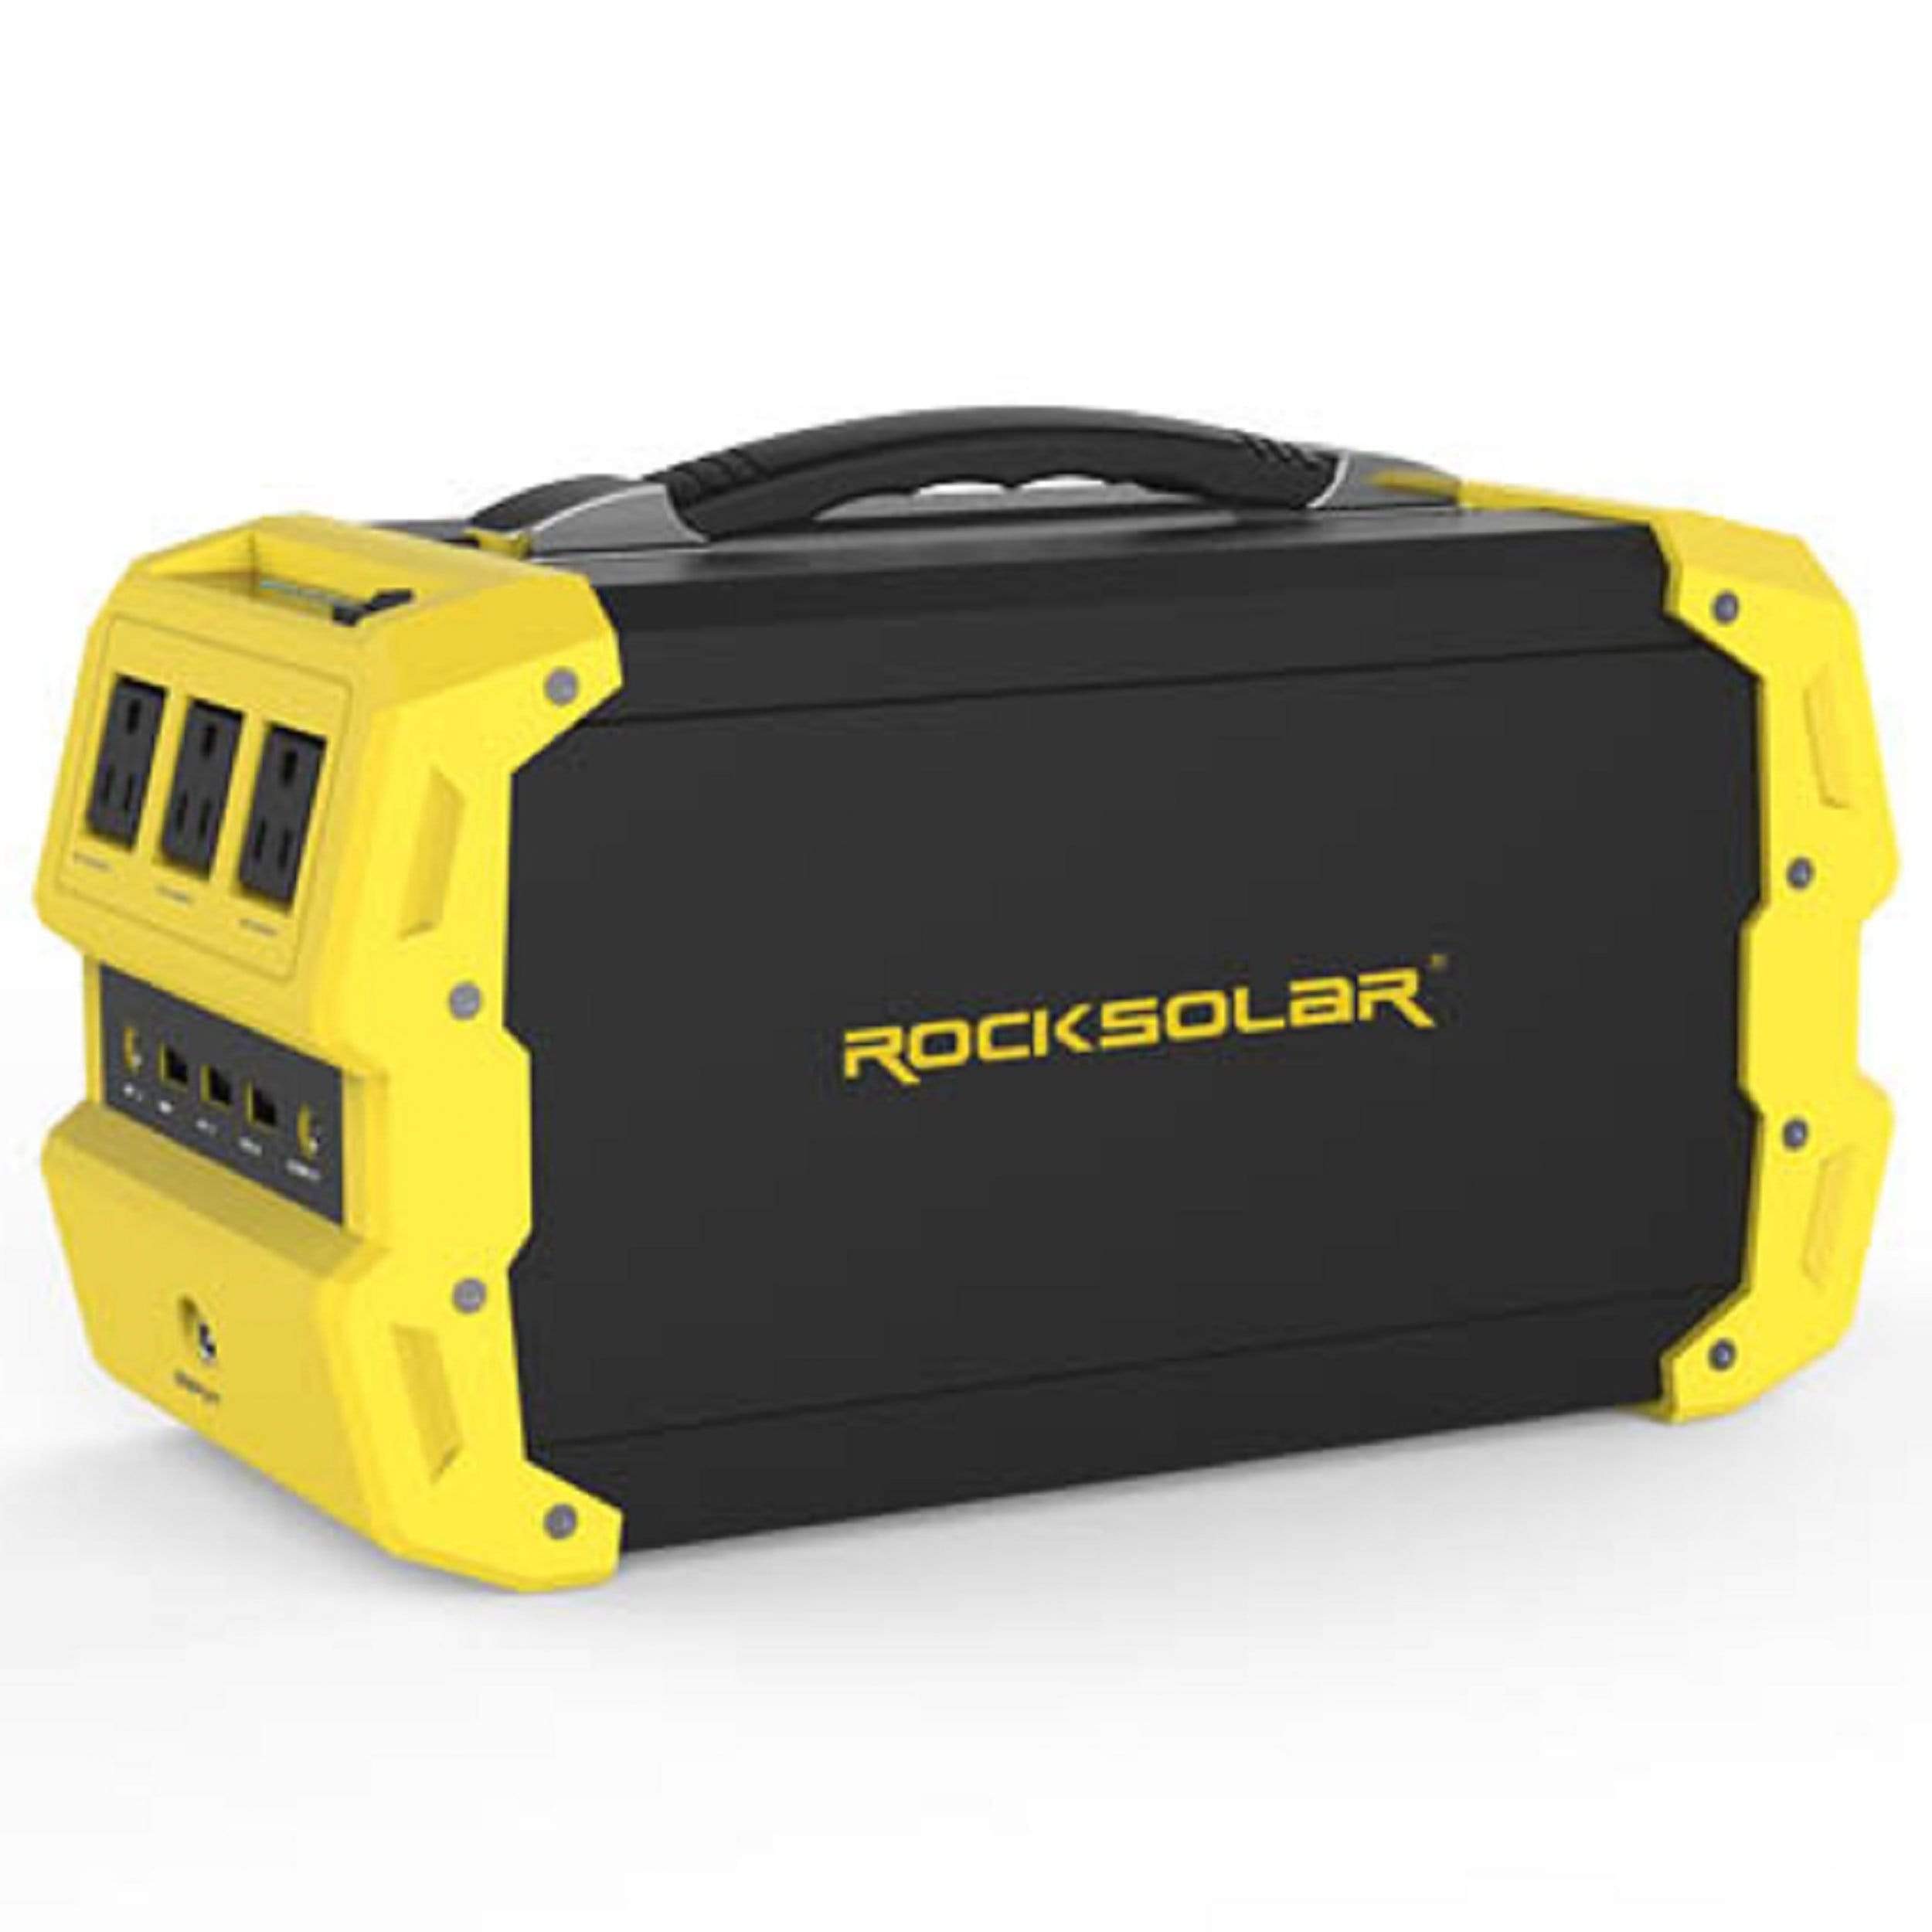 ROCKSOLAR Camping & Outdoor : Solar/Portable Power Rocksolar Portable Power Station 400W